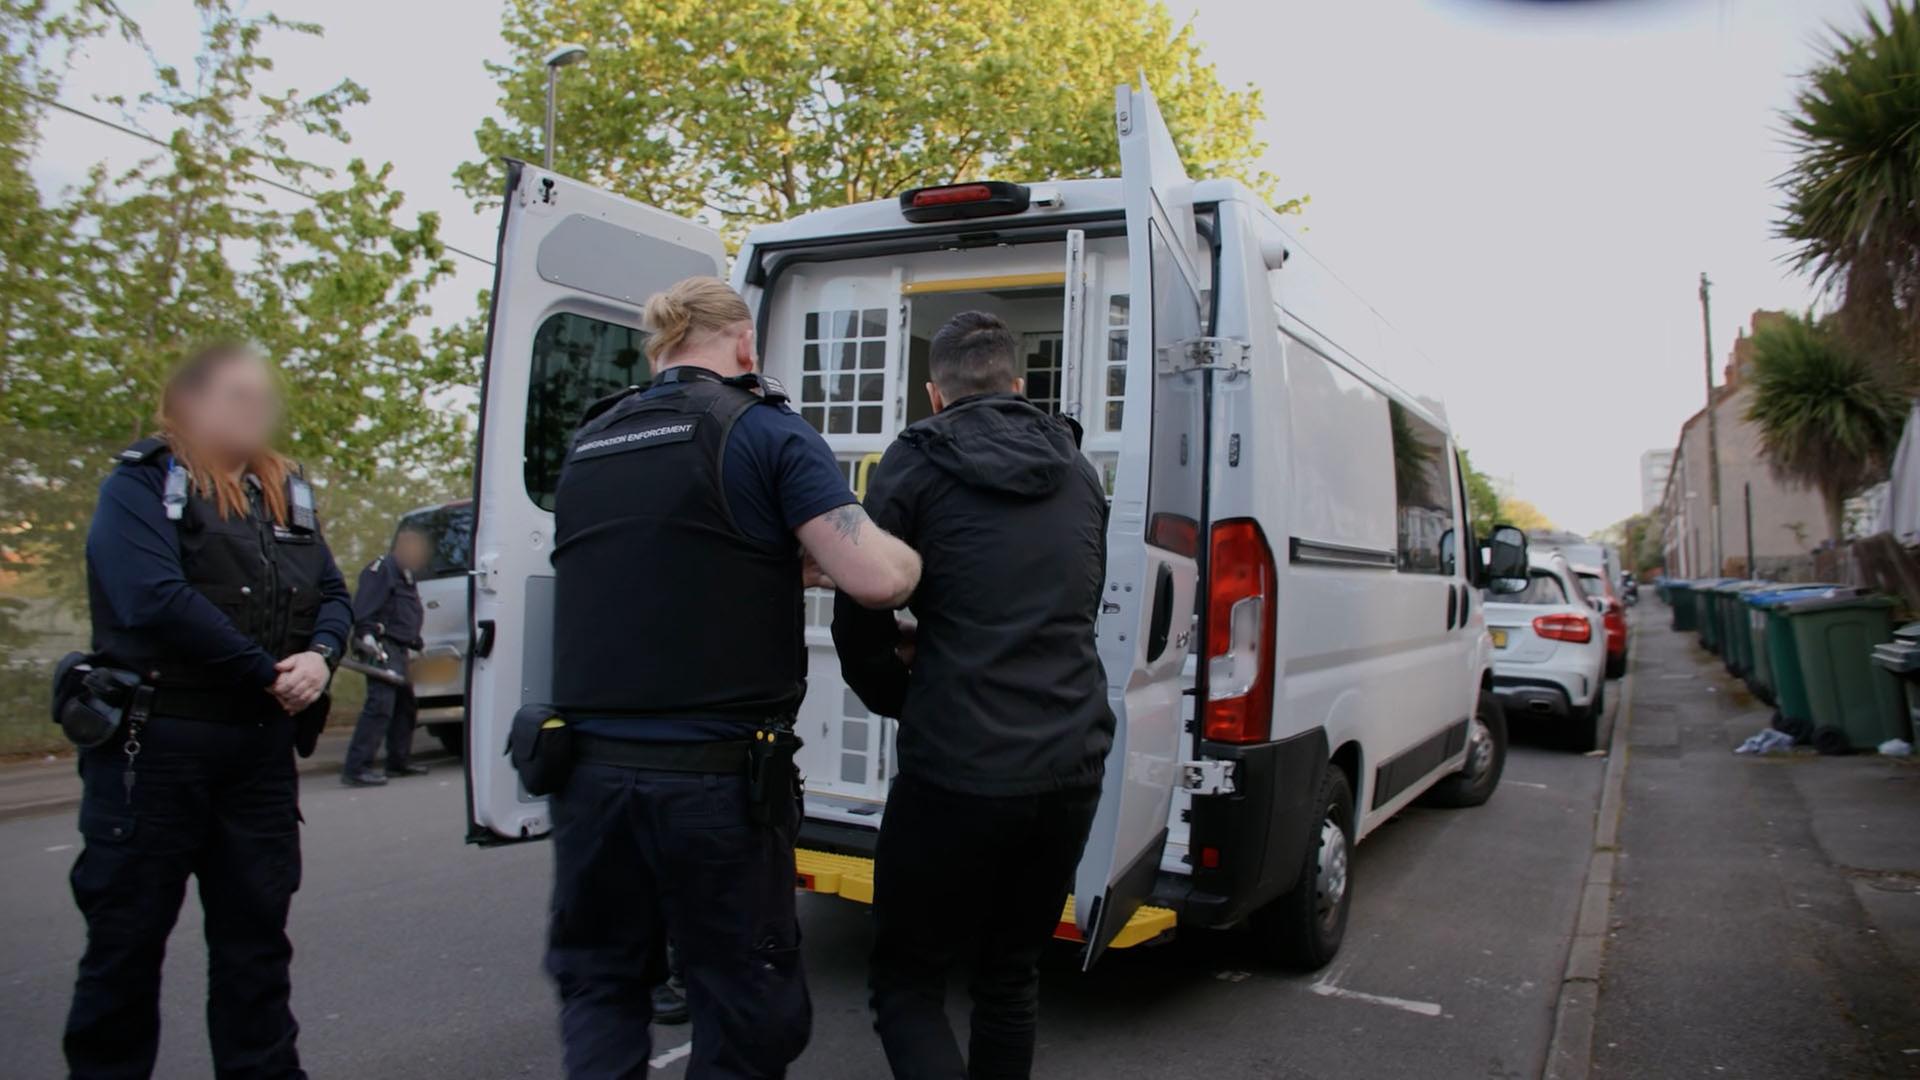 Großbritannien, London: Dieses vom Innenministerium herausgegebene Foto zeigt Beamte der Einwanderungsbehörde bei Verhaftung. 